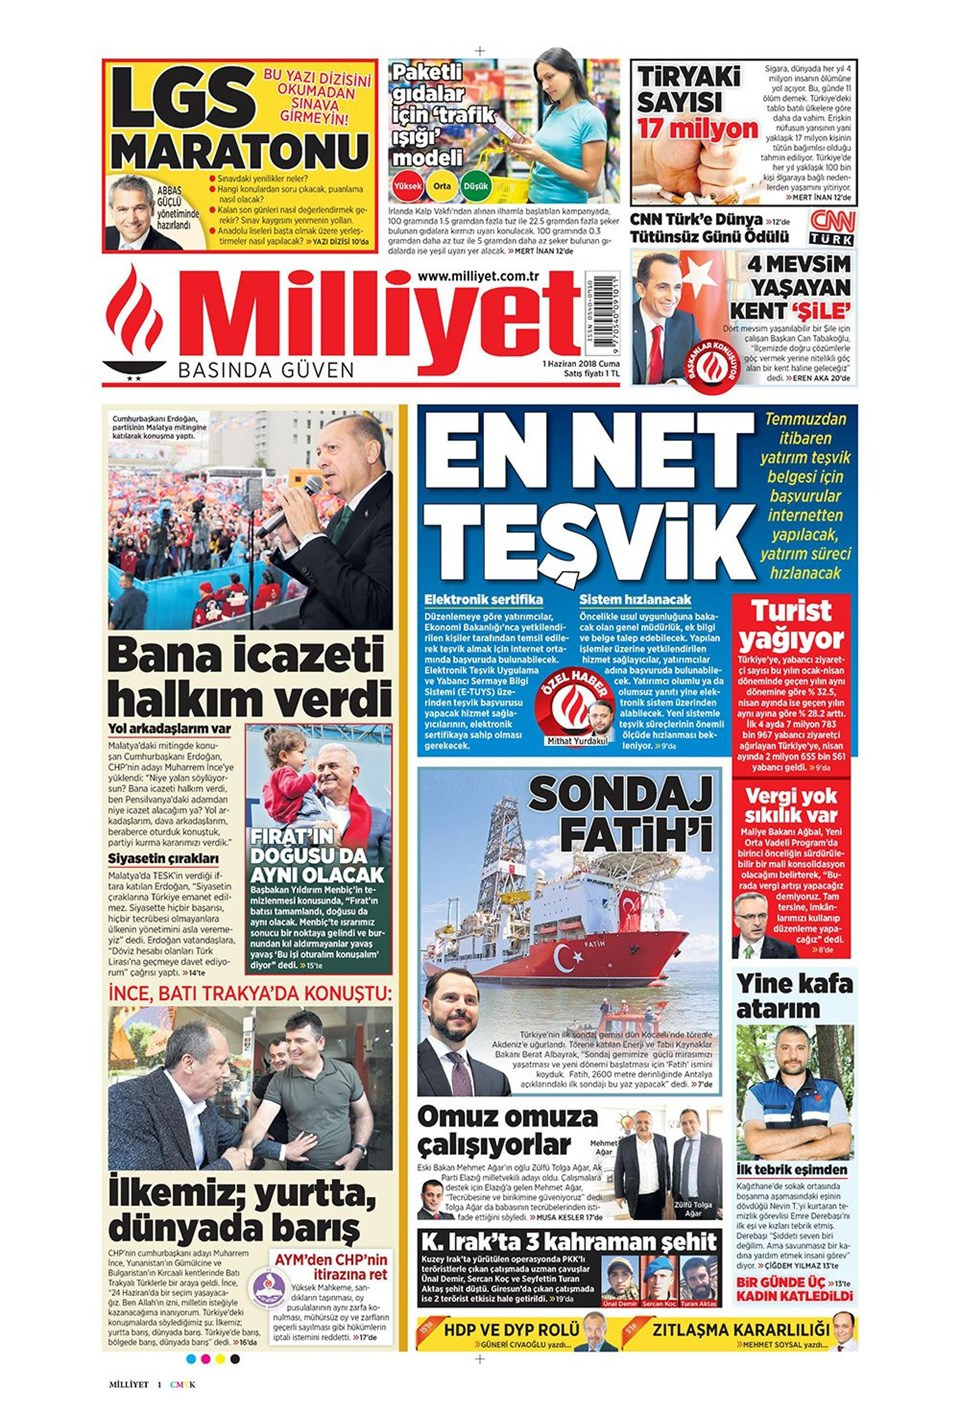 Gazete manşetleri 1 Haziran 2018 Hürriyet - Sözcü - Posta